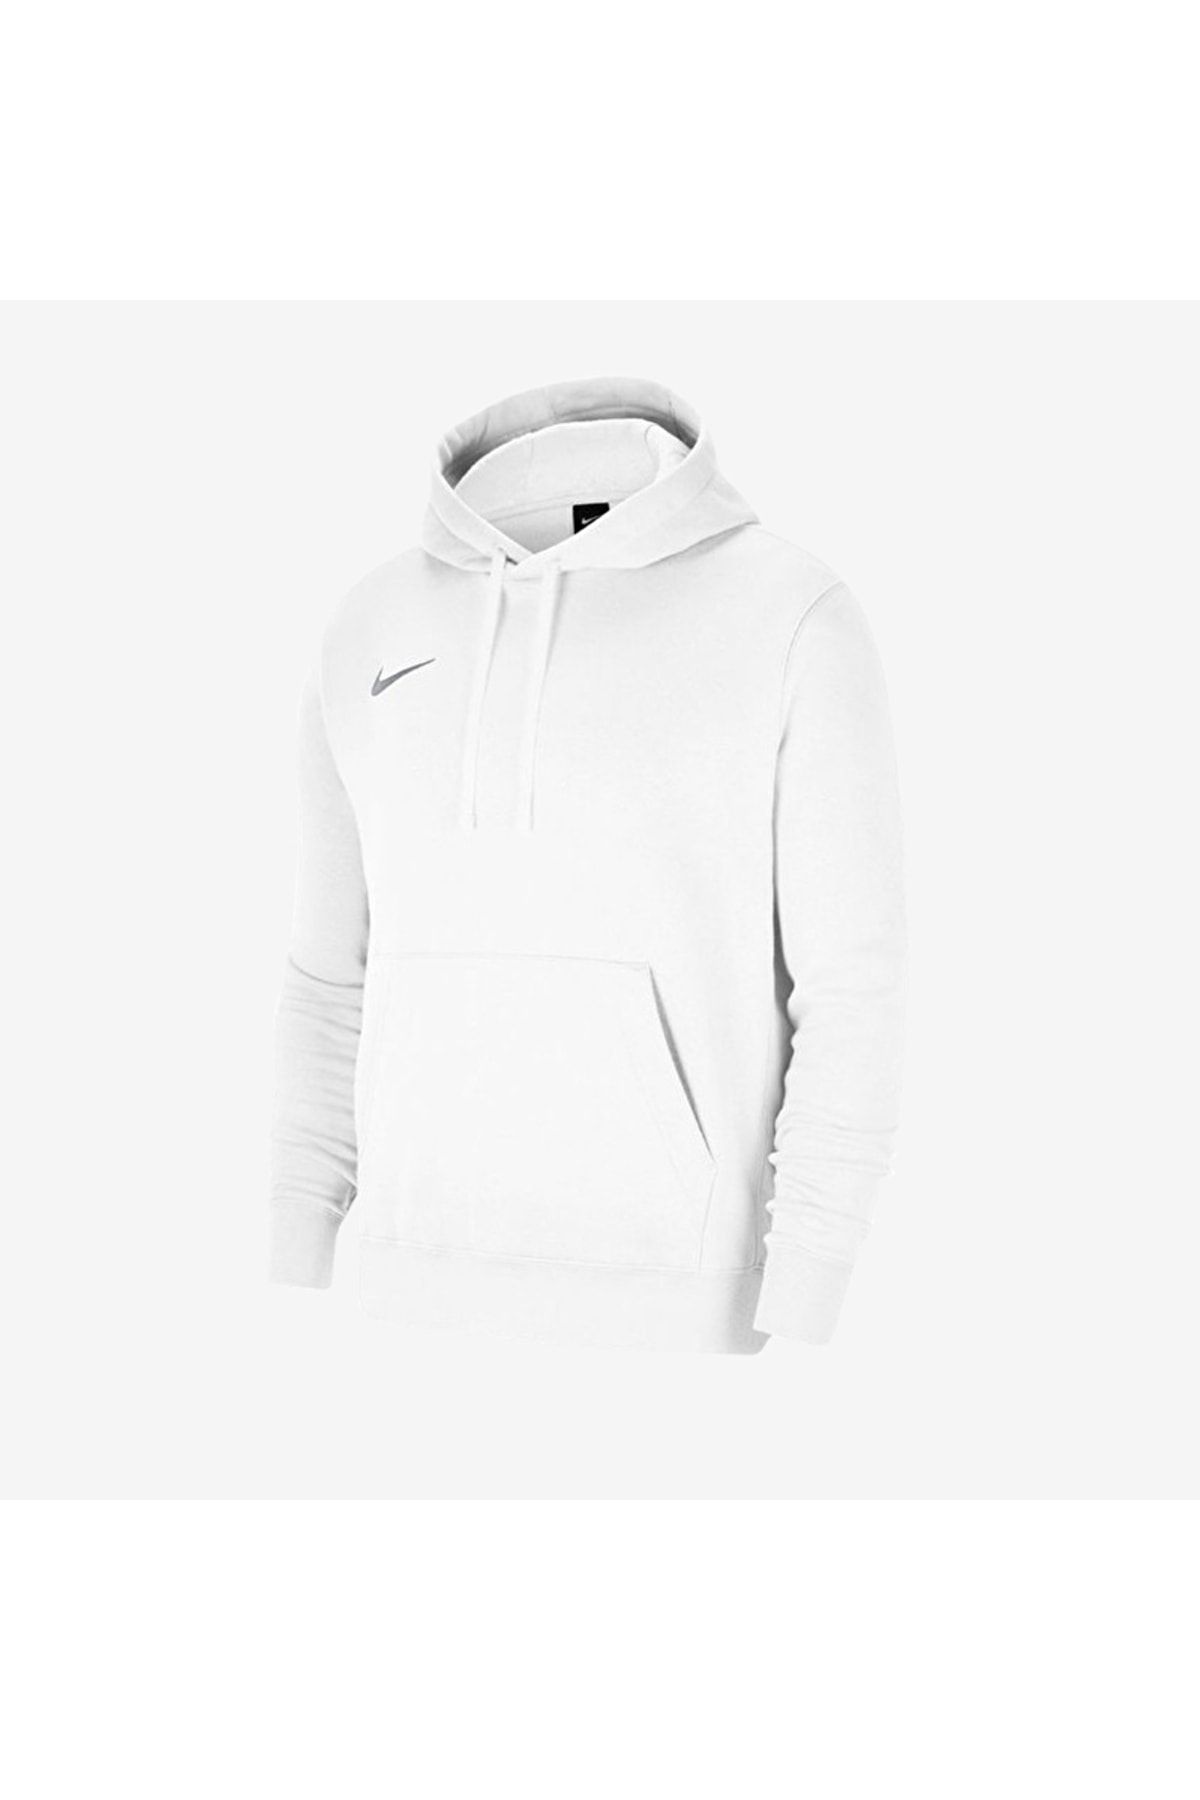 Nike Cw6957-101 Team Park 20 Kadın Sweatshirt